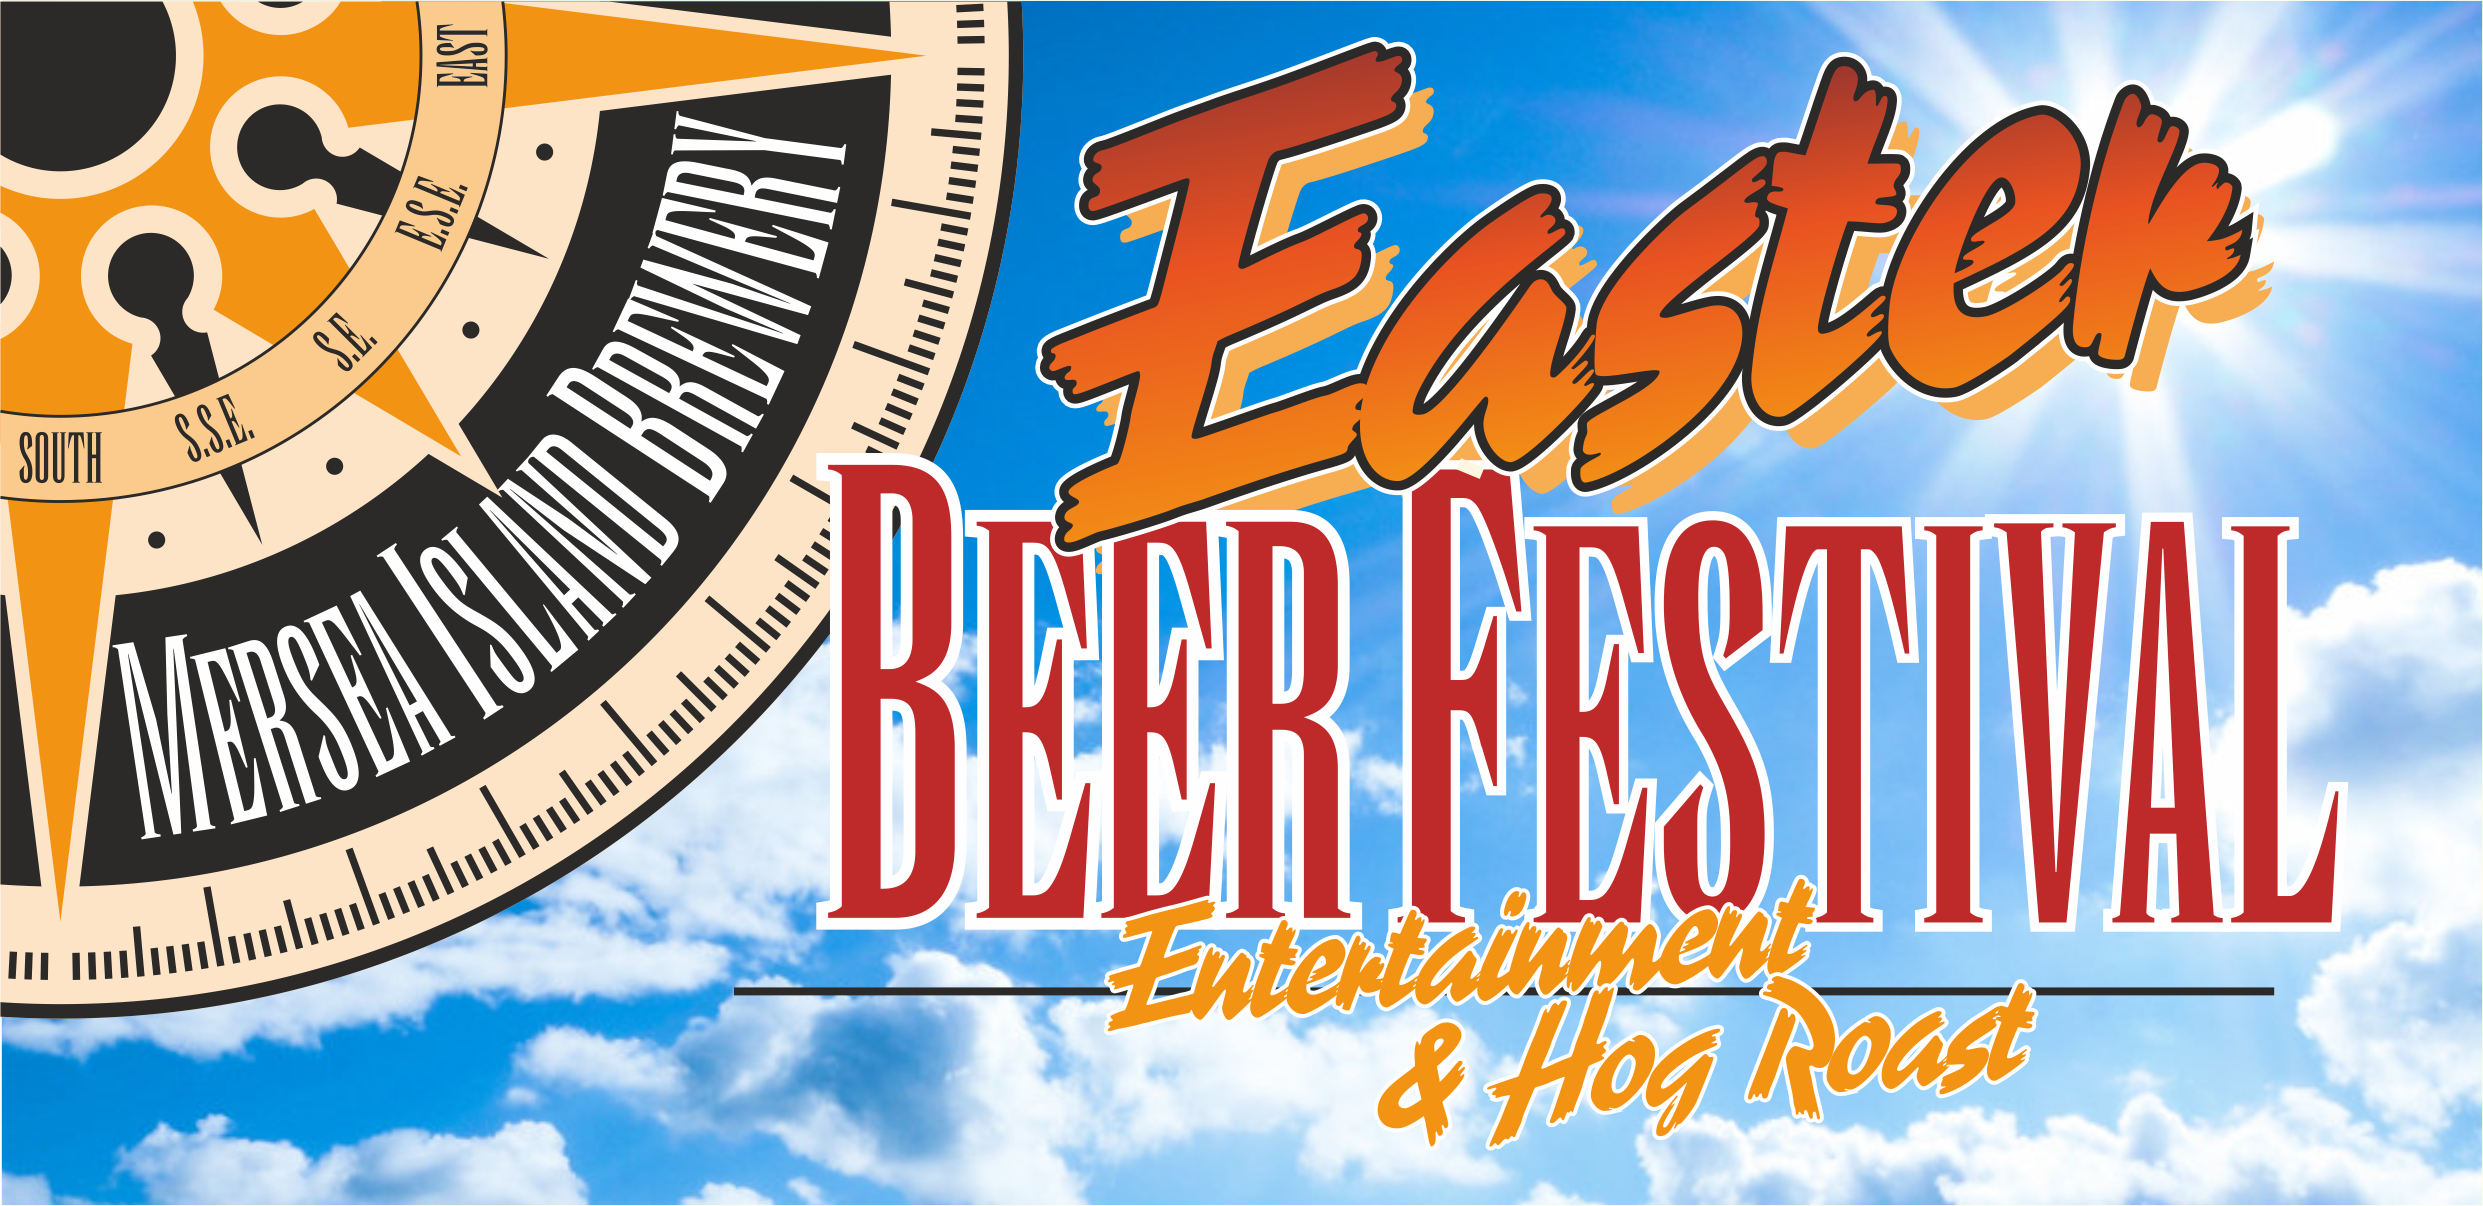 Mersea Island Brewery Easter Beer Festival